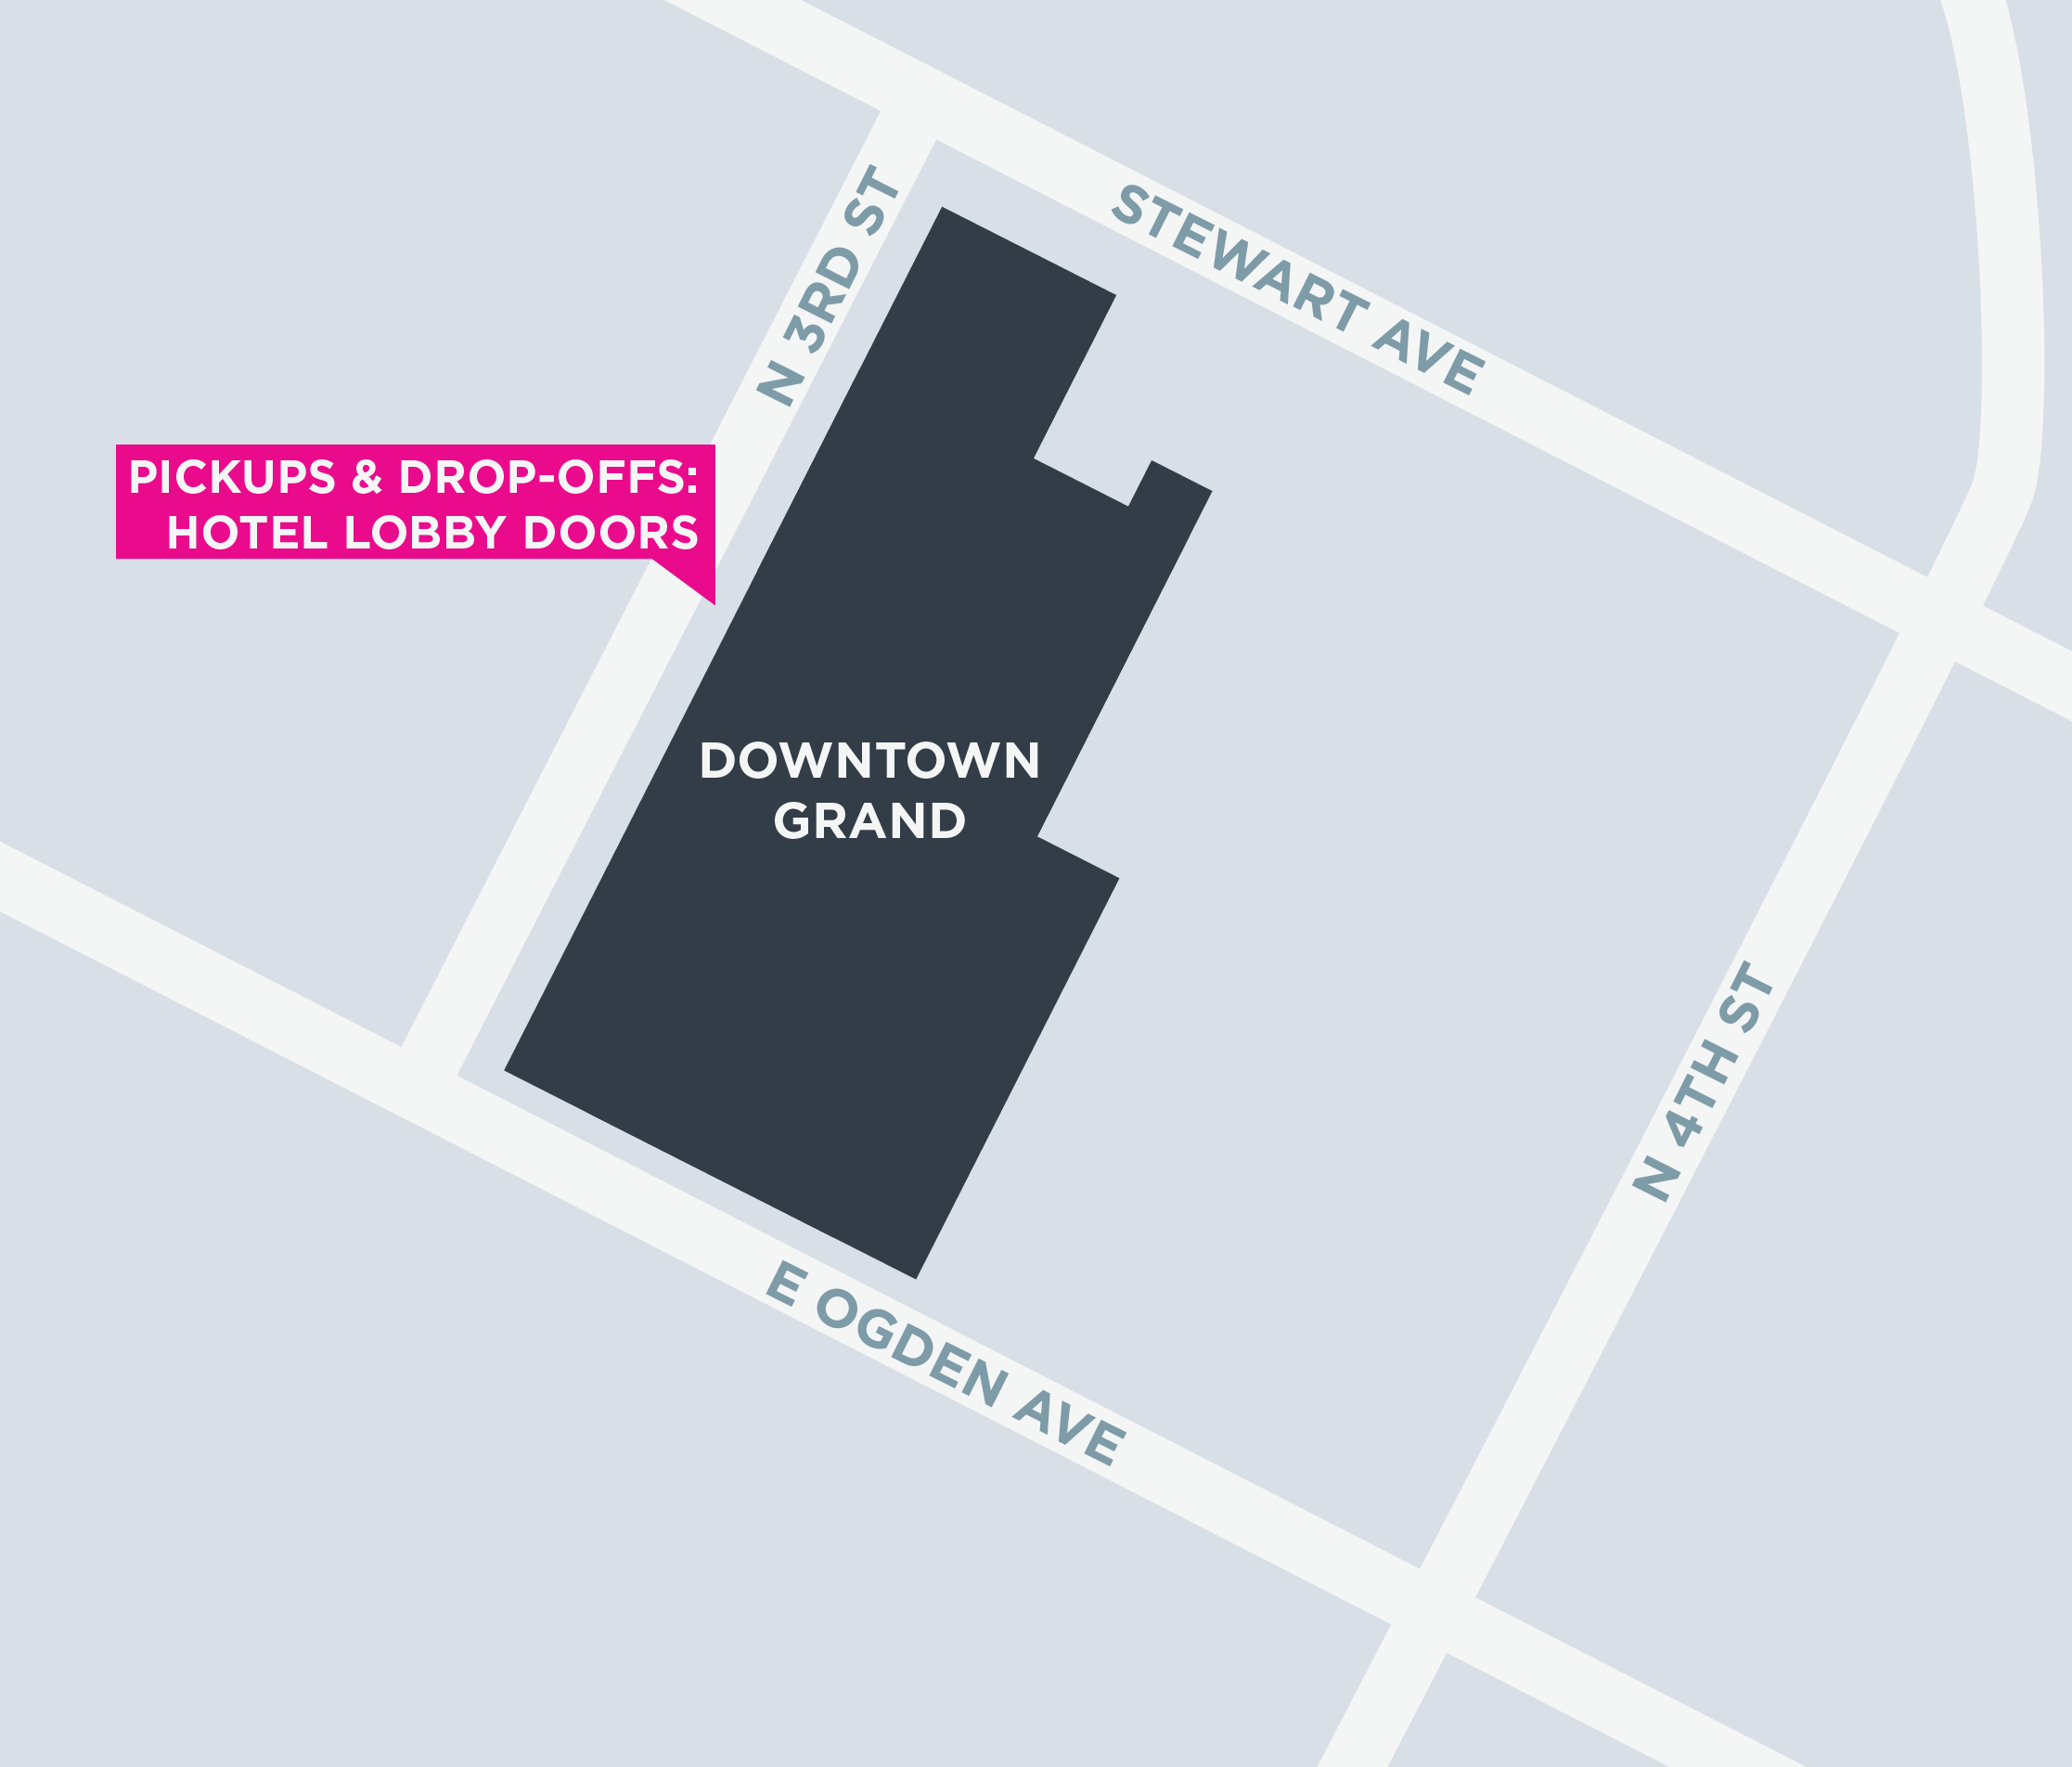 Esta imagen muestra un mapa de Downtown Grand, incluidas las áreas para recoger y dejar pasajeros.